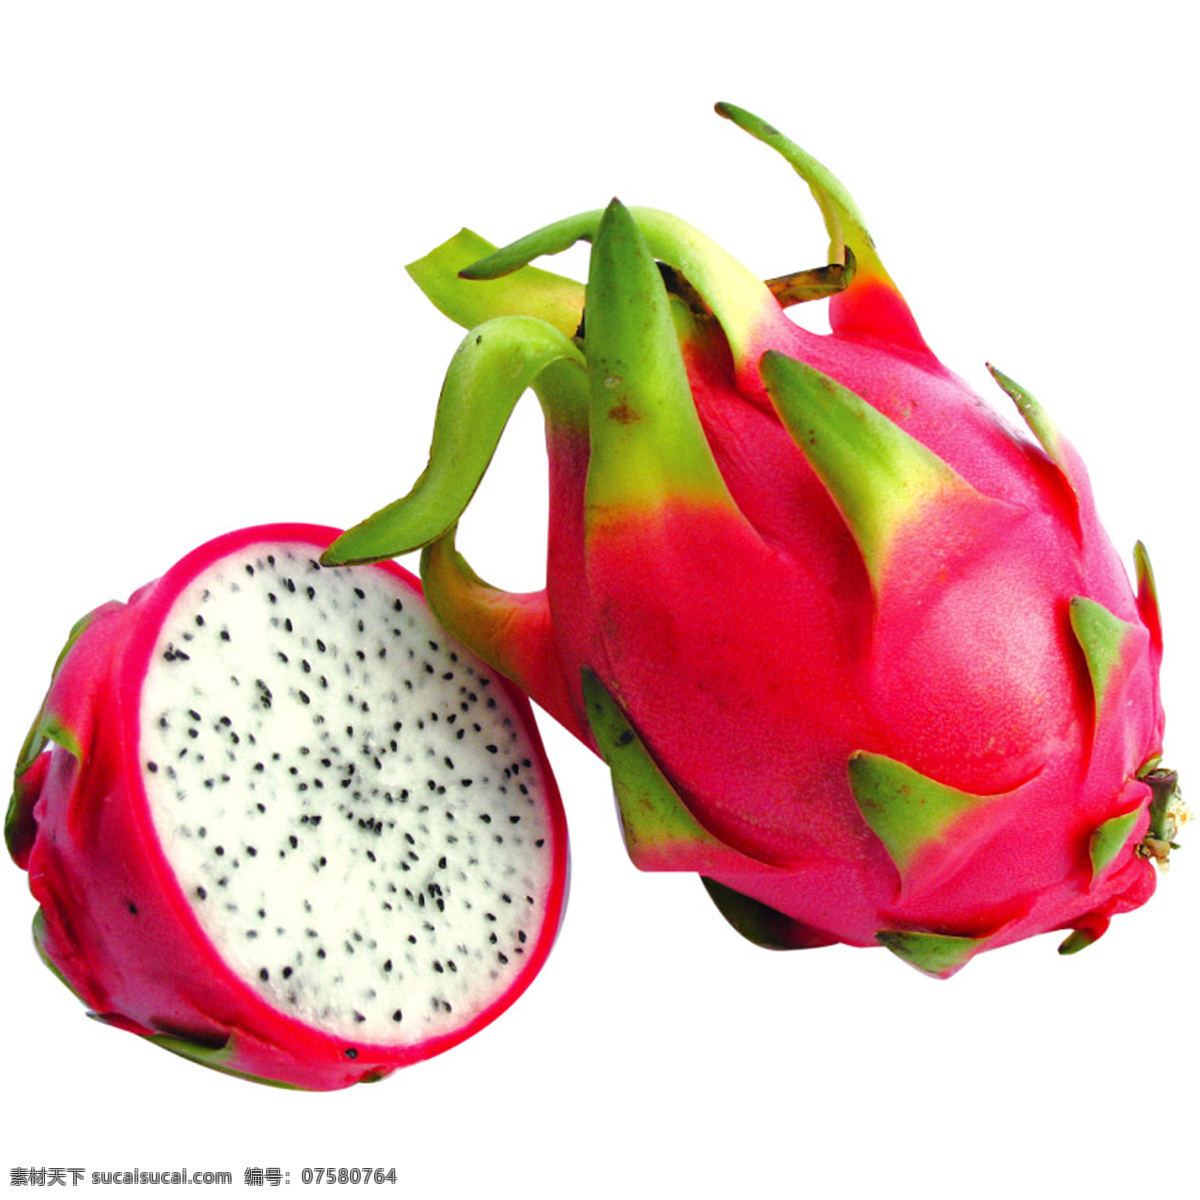 火龙果 白心火龙果 水果 热带水果 美食 食物 生物世界